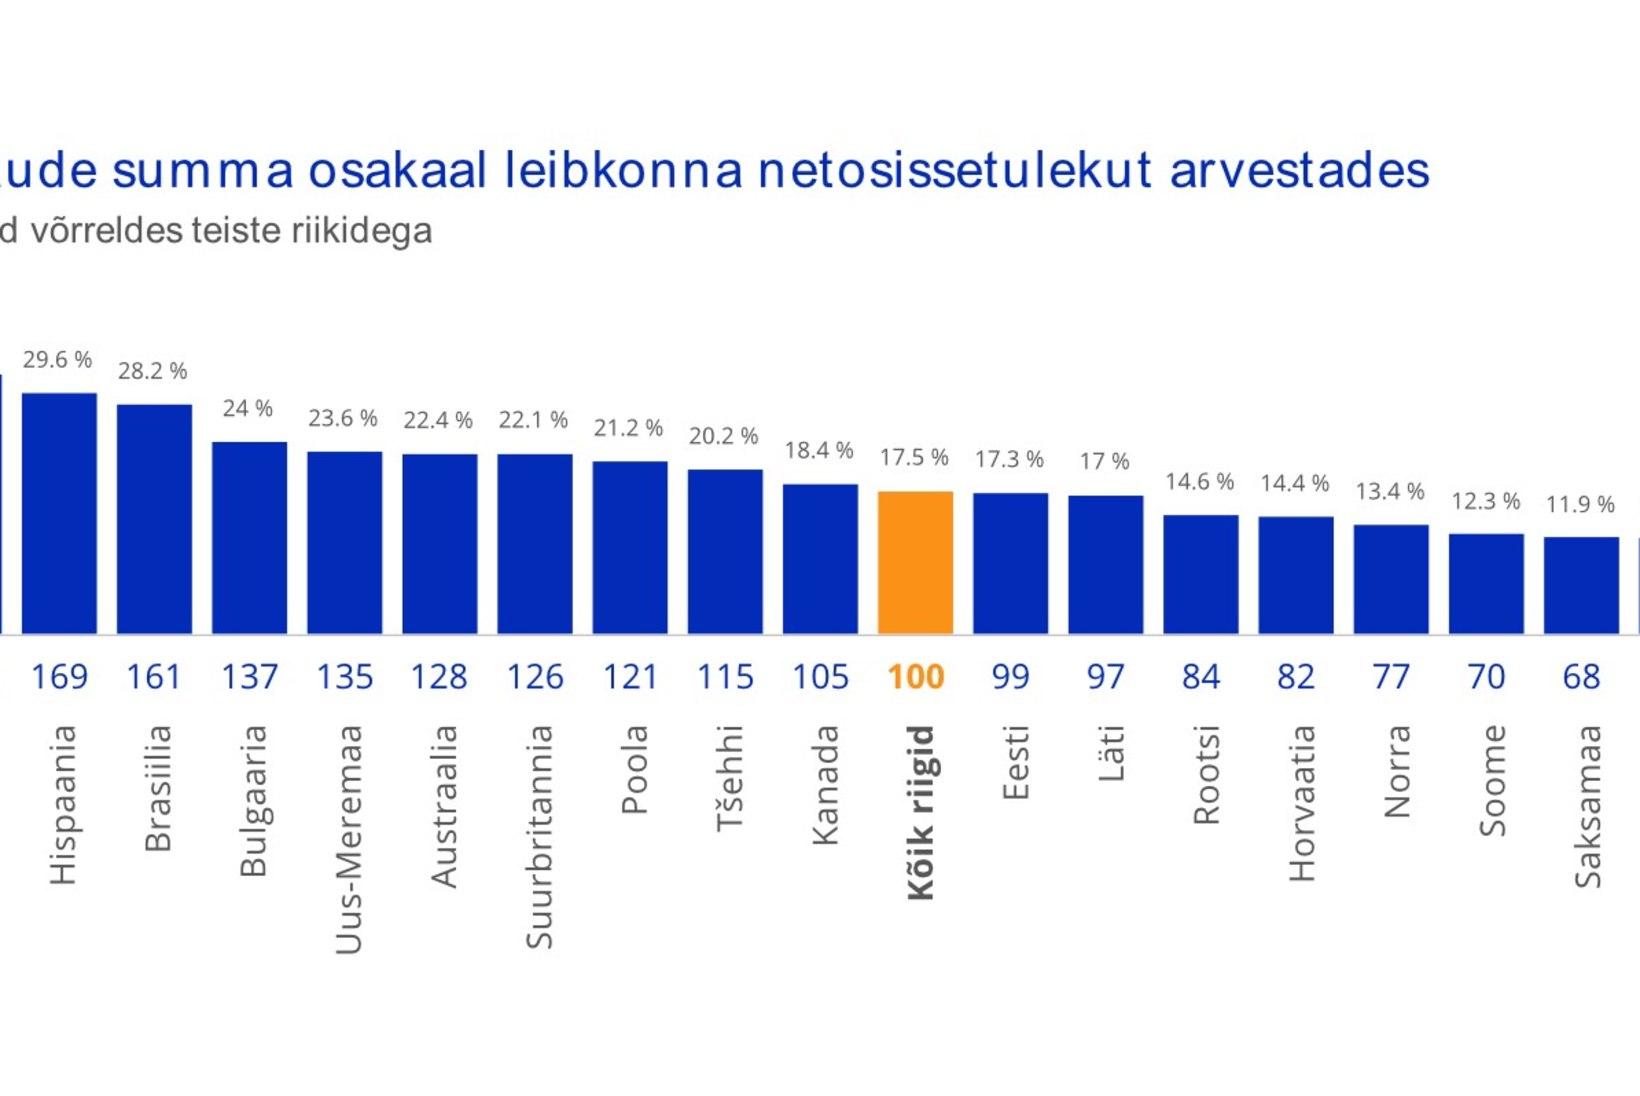 UURING: kui palju Eesti pere kulutab jõulu- ja nääriostudele?